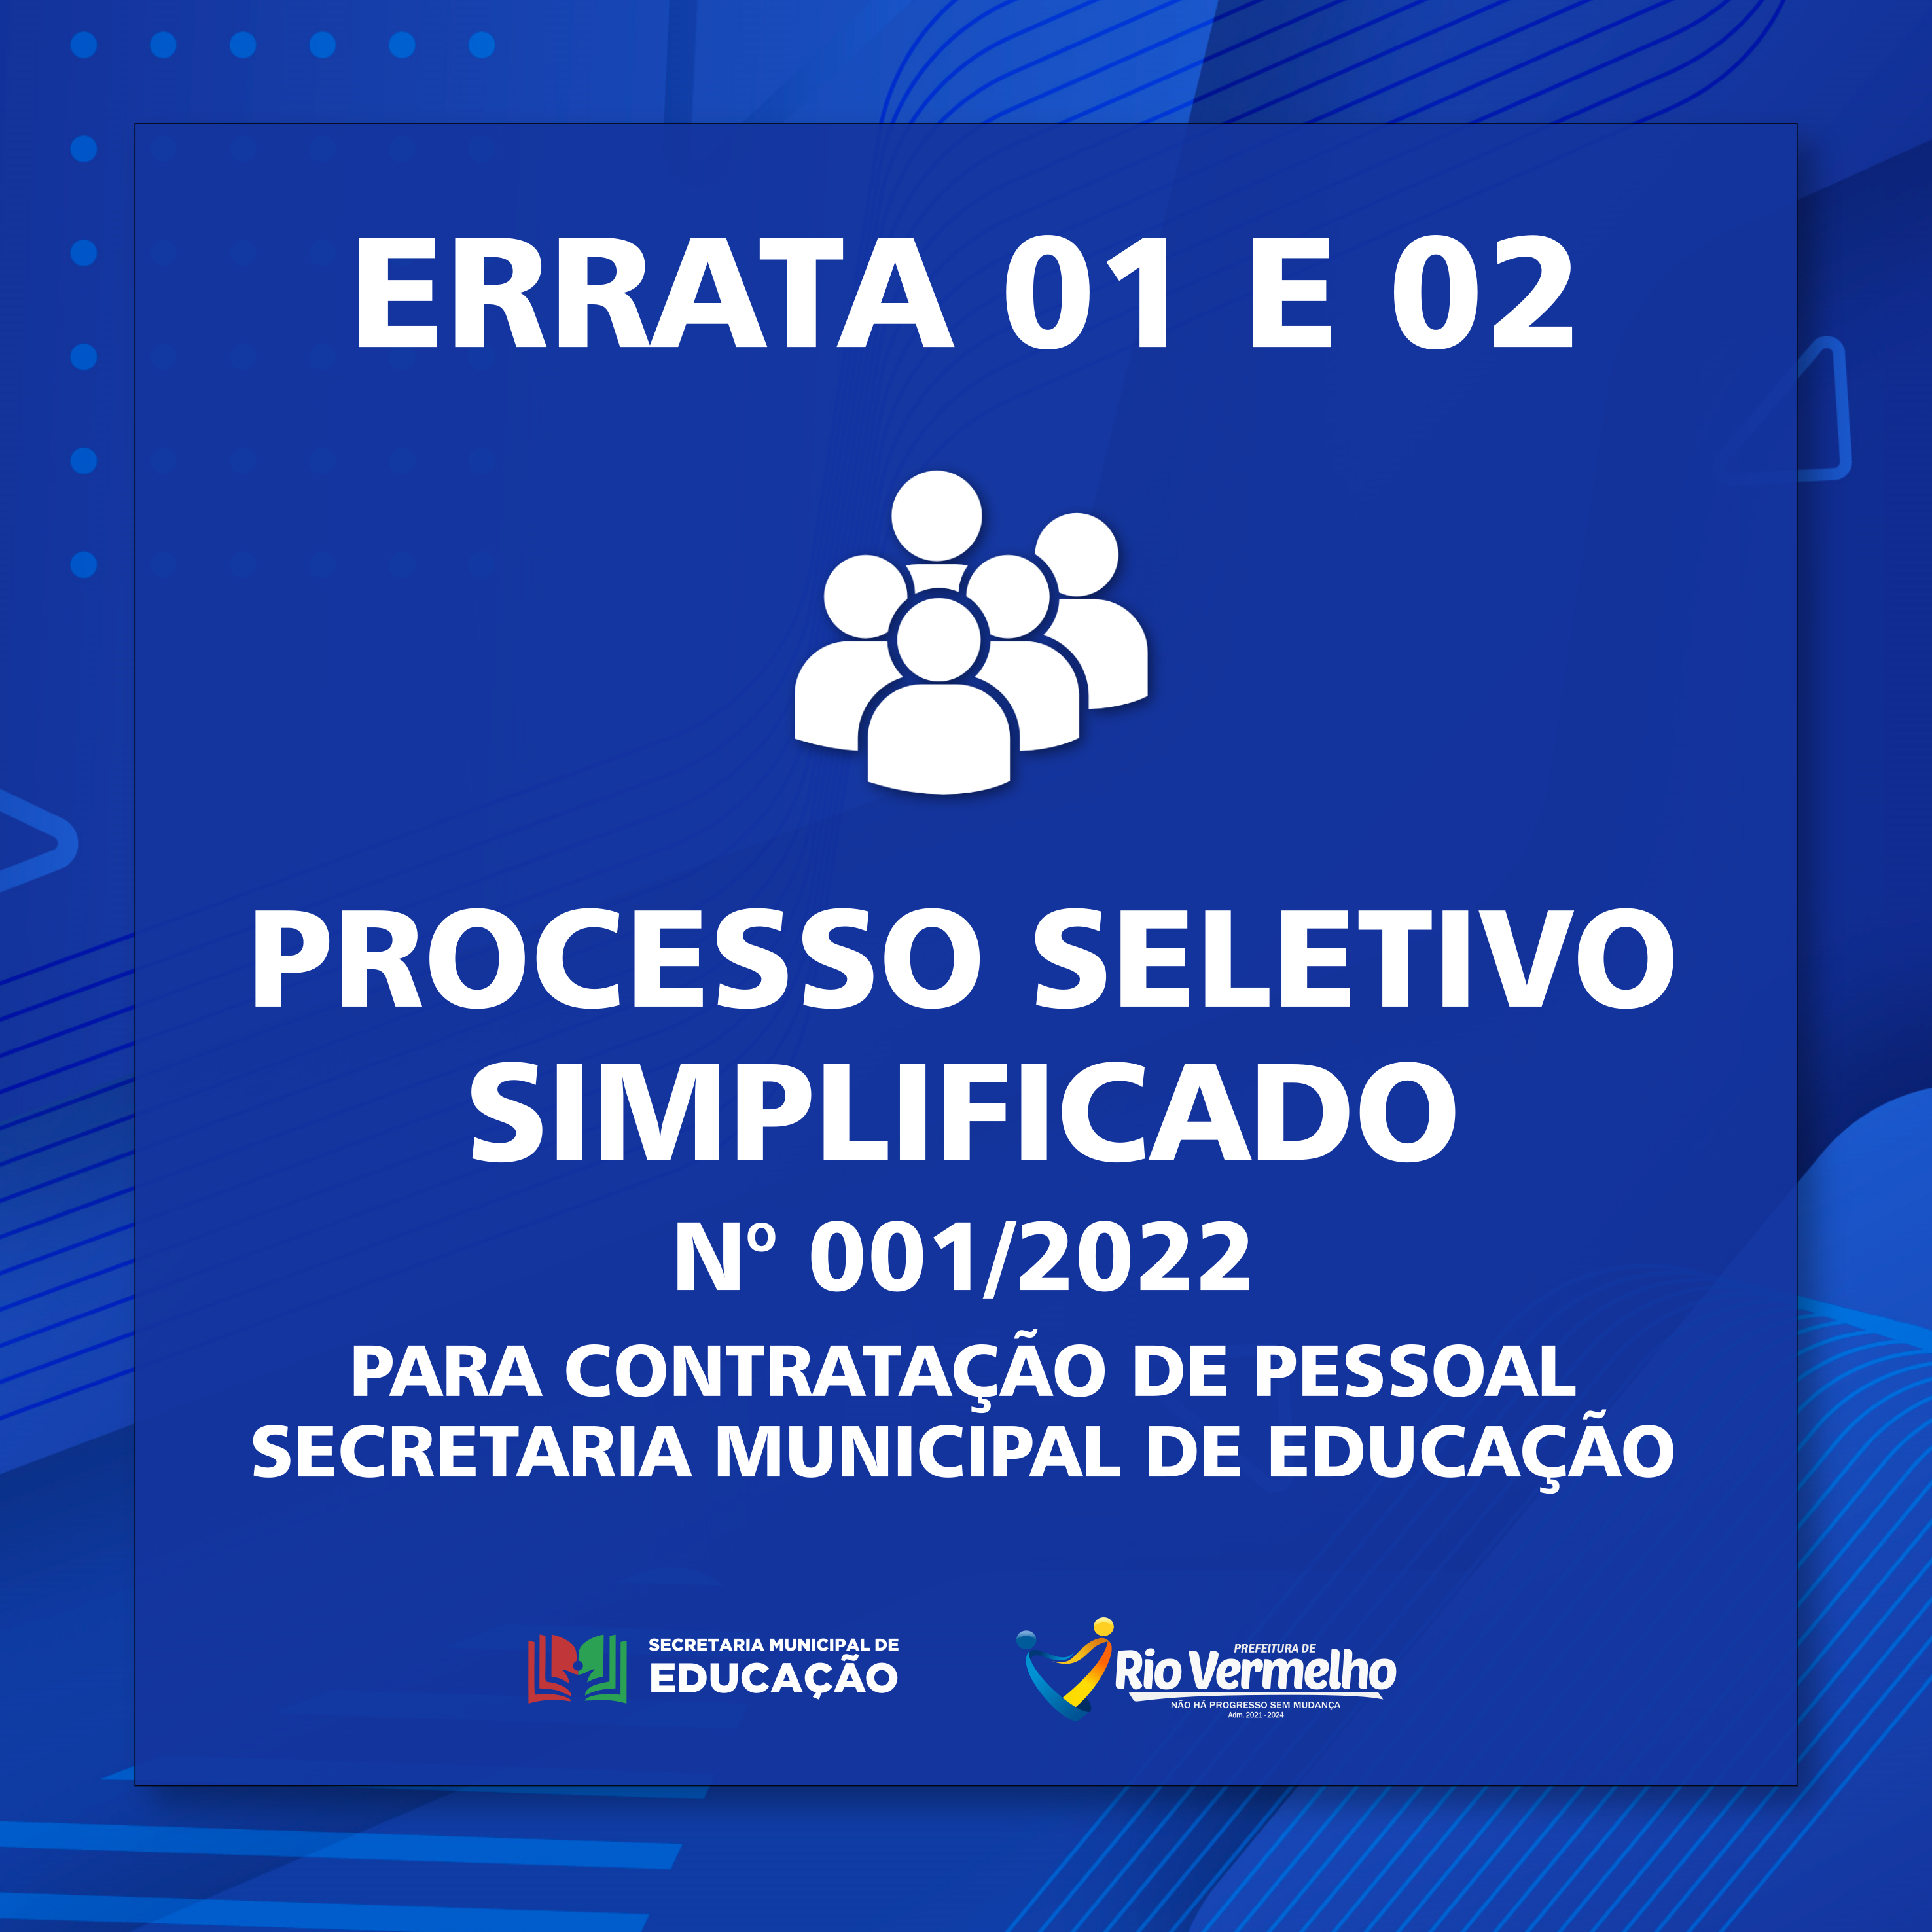 You are currently viewing ERRATA 01 E 02 DO PROCESSO SELETIVO SIMPLIFICADO Nº 001/2022 – SECRETARIA MUNICIPAL DE EDUCAÇÃO